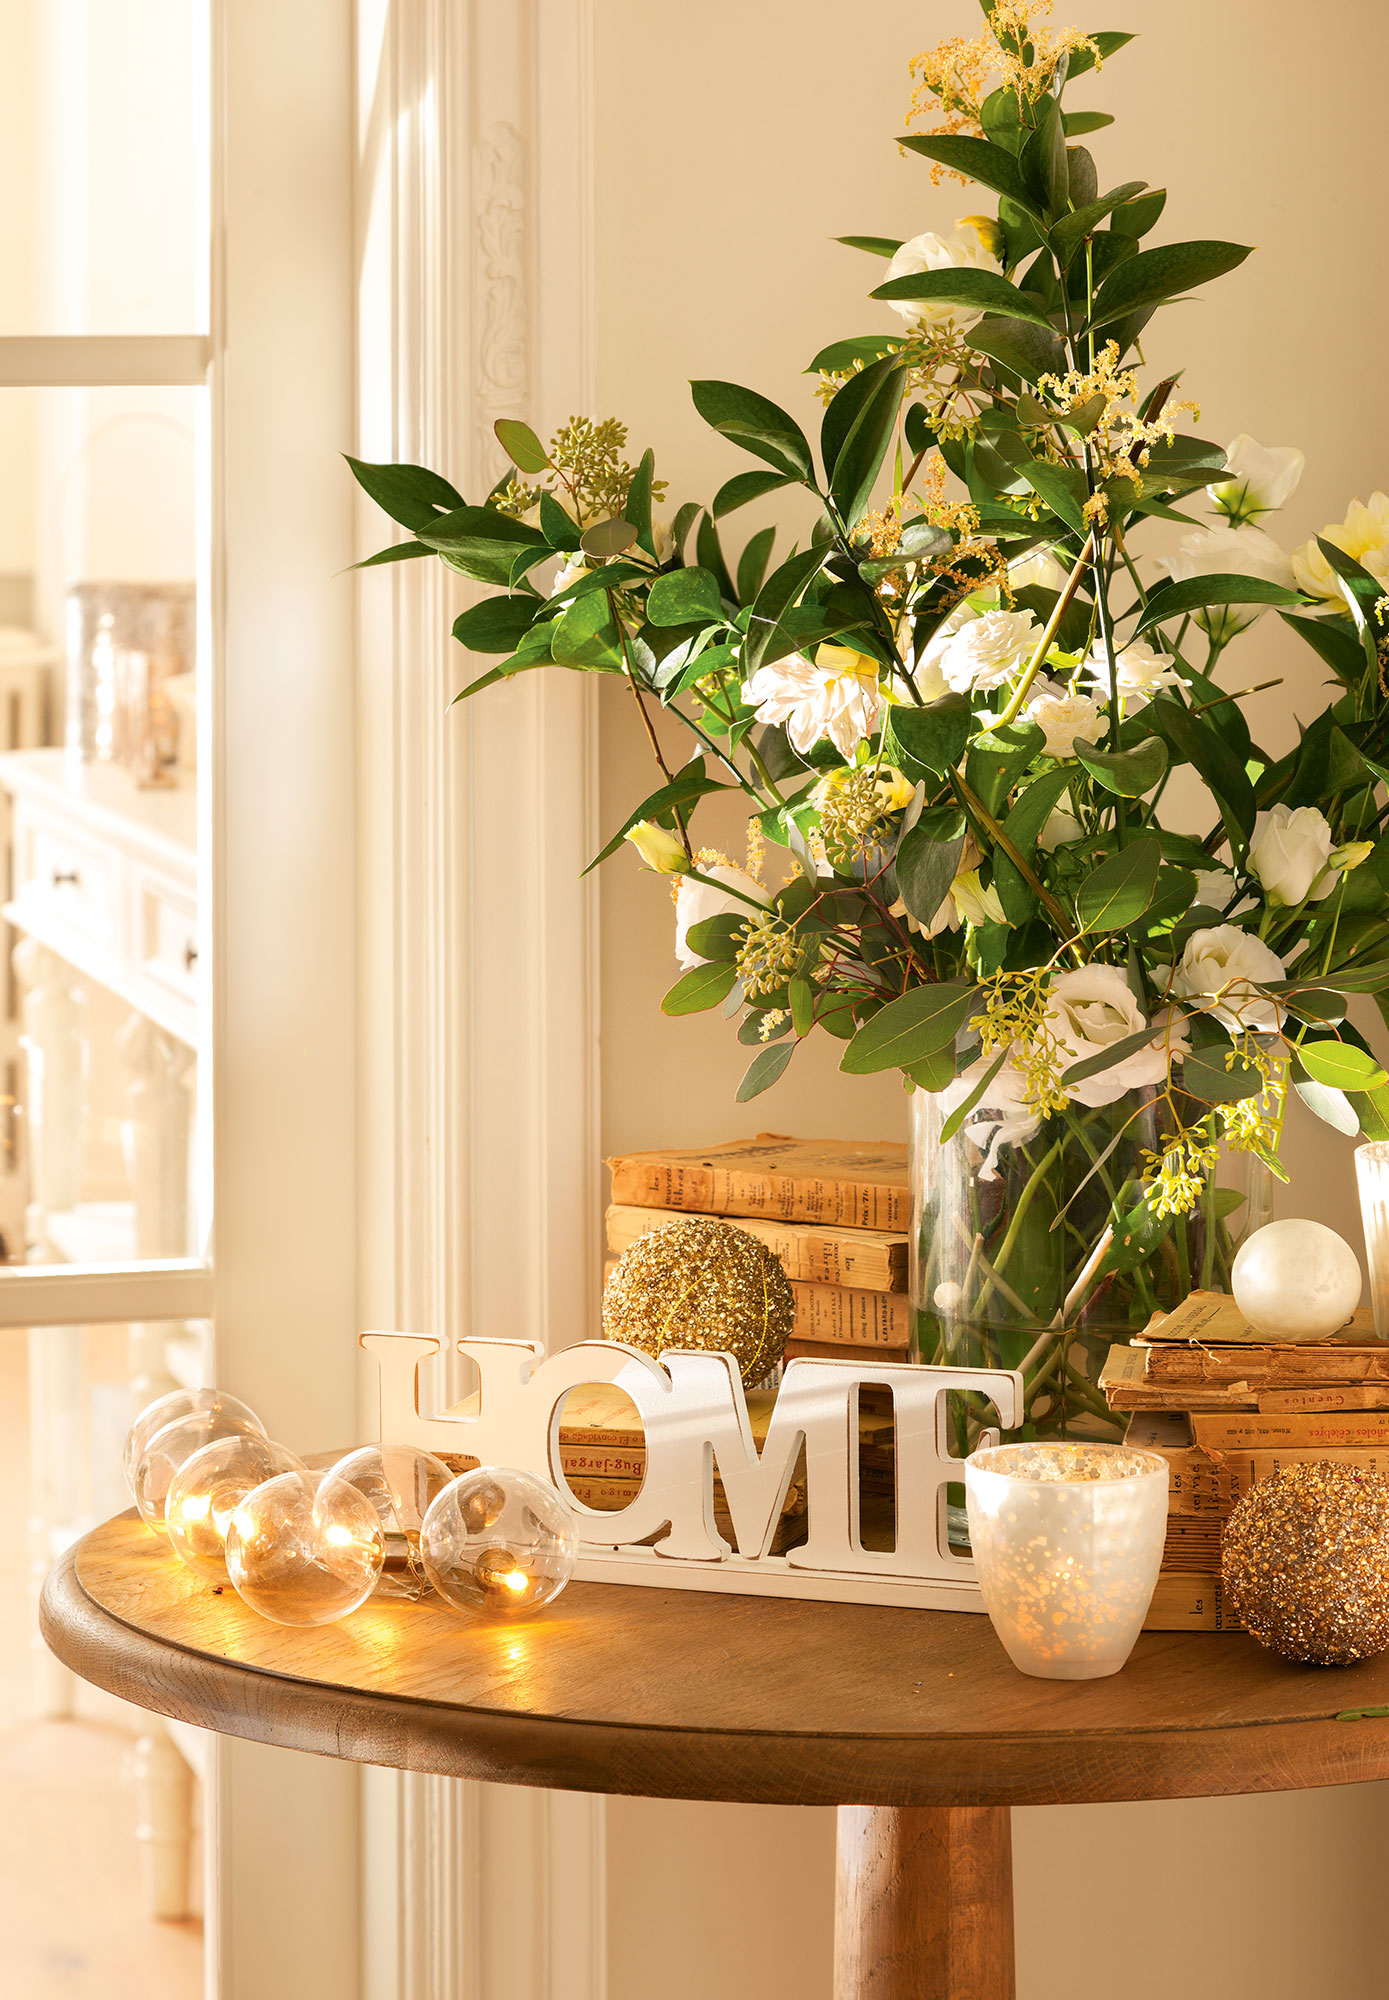 Detalle de rincón del salón con composición floral y detalles navideños en blanco y dorado 